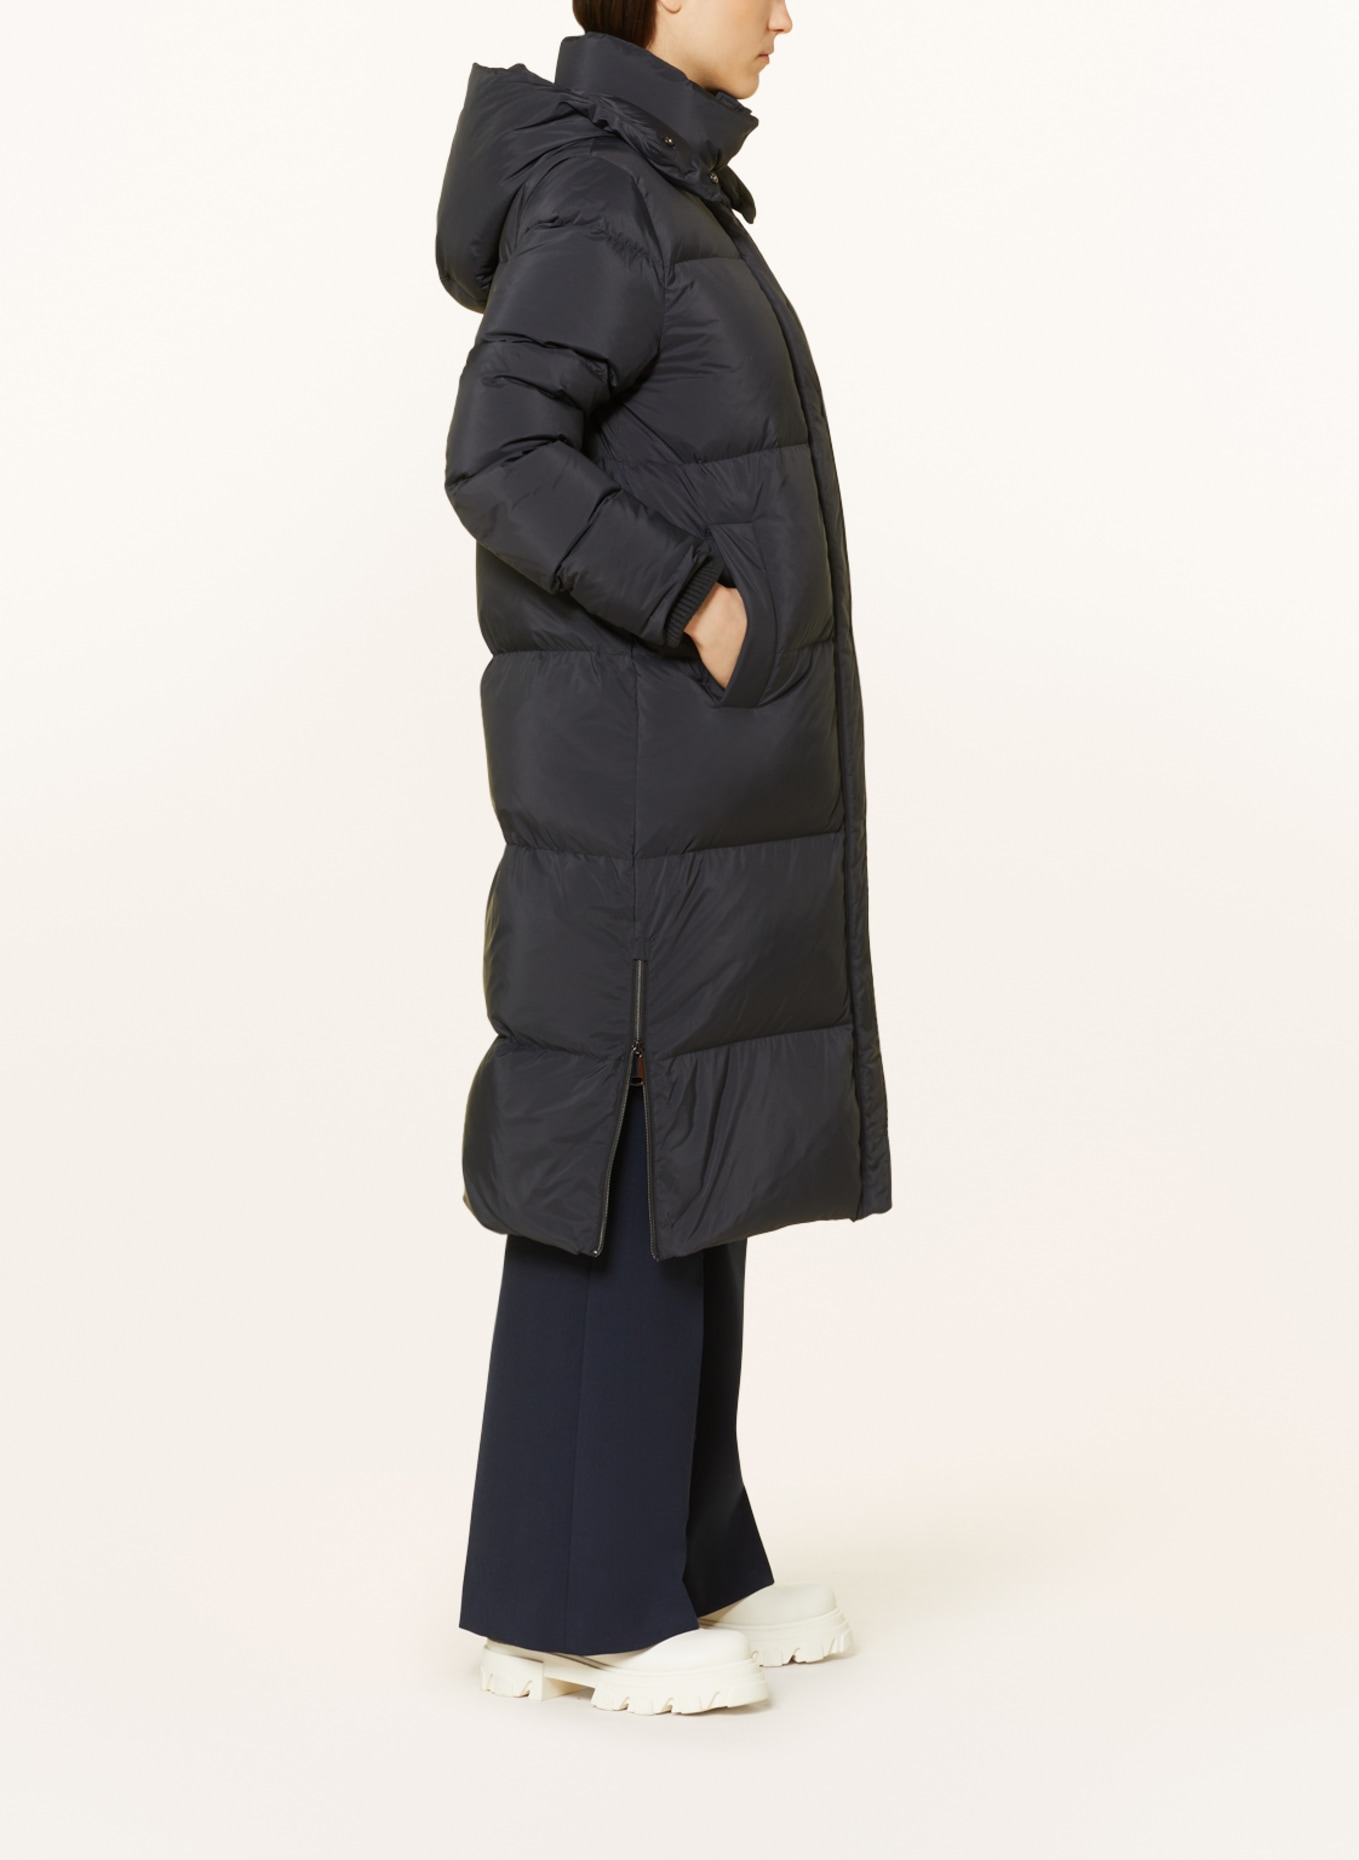 s.Oliver BLACK LABEL Down jacket with removable hood, Color: BLACK (Image 4)